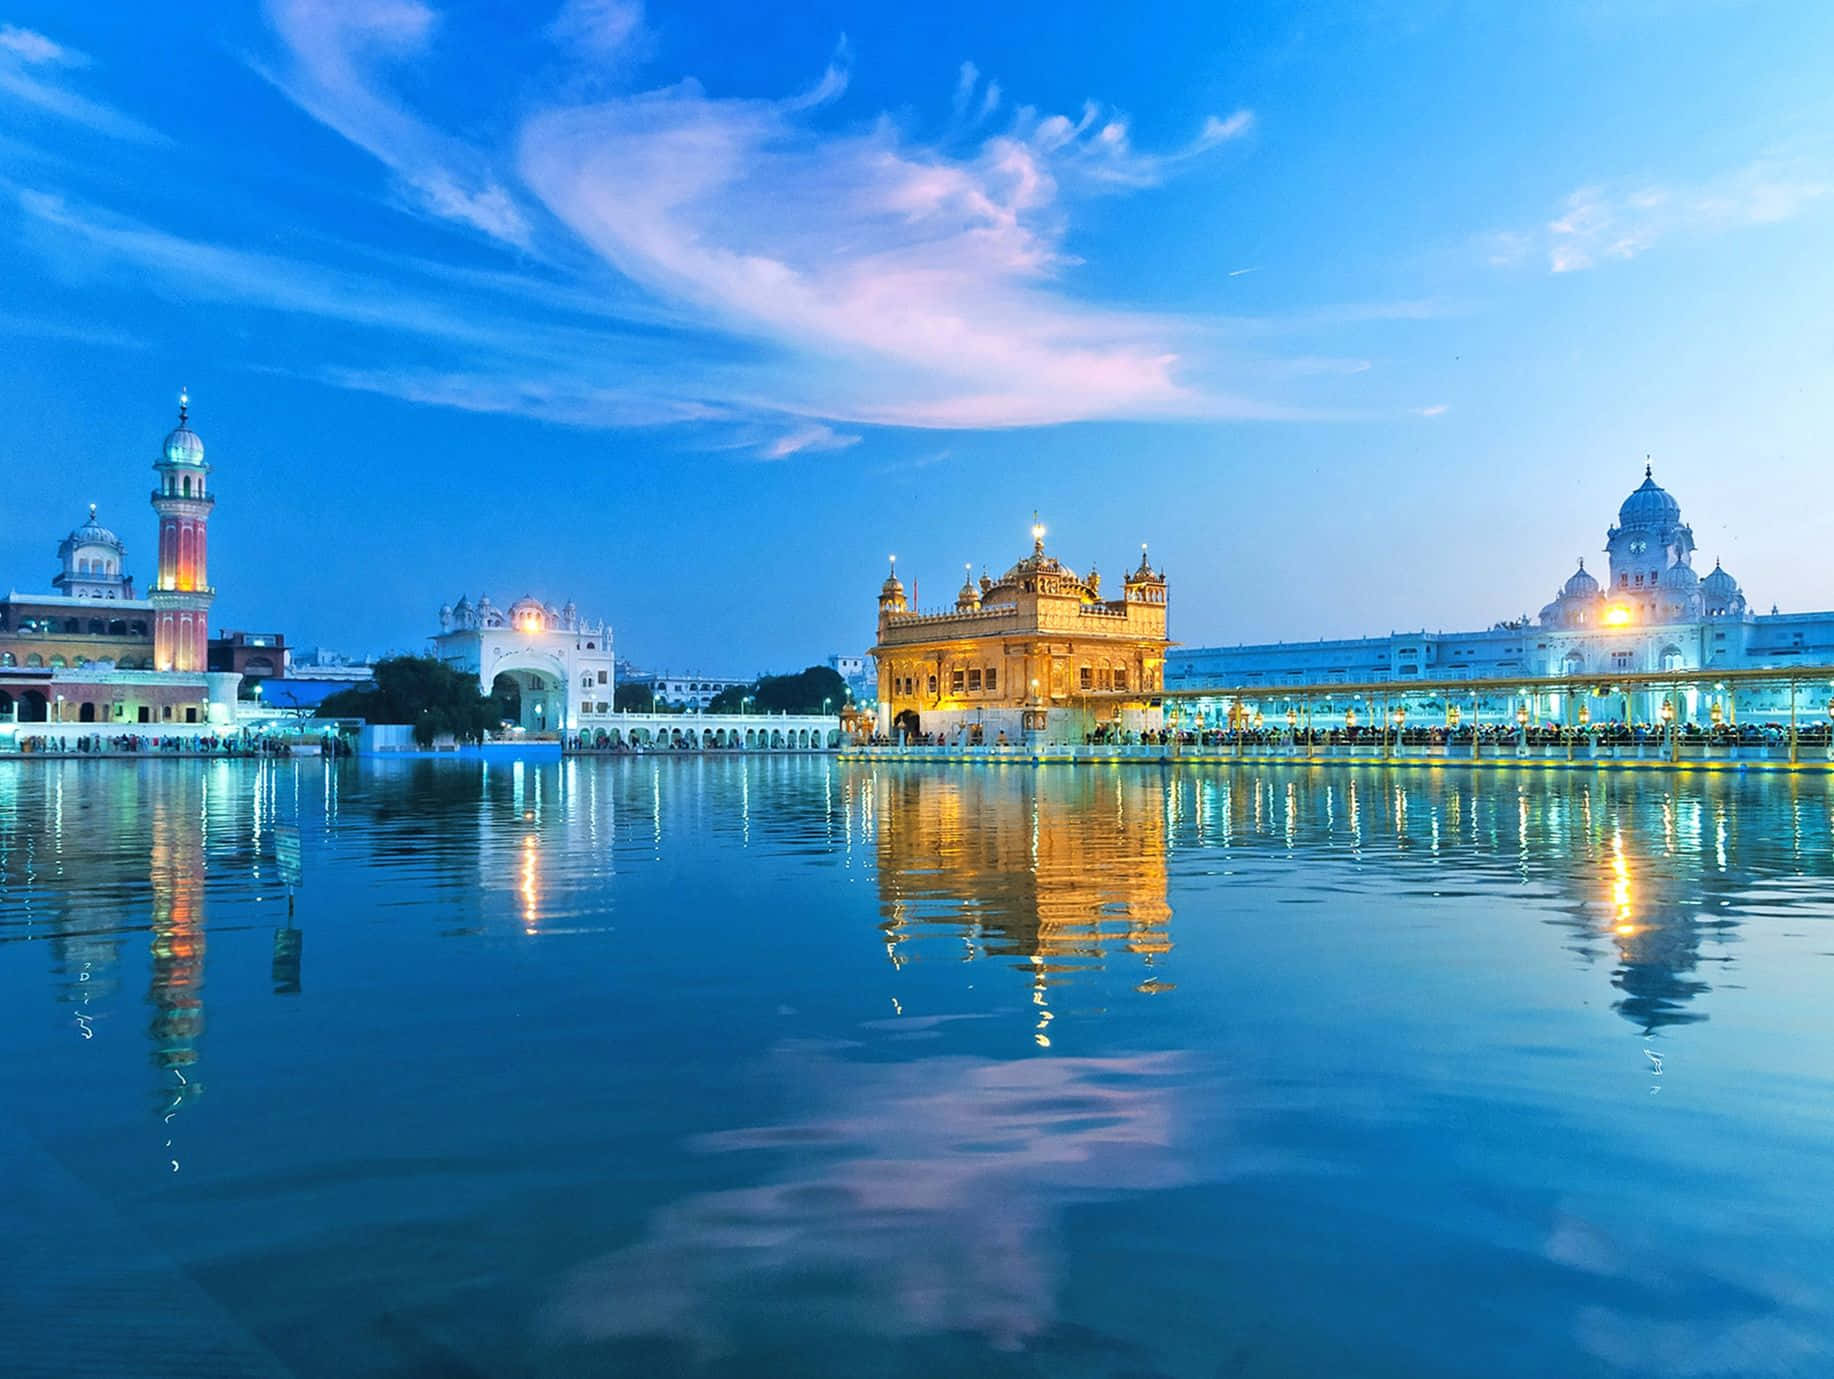 Ilmaestoso Tempio D'oro Ad Amritsar Che Si Riflette Sulle Serene Acque Del Lago Sacro.